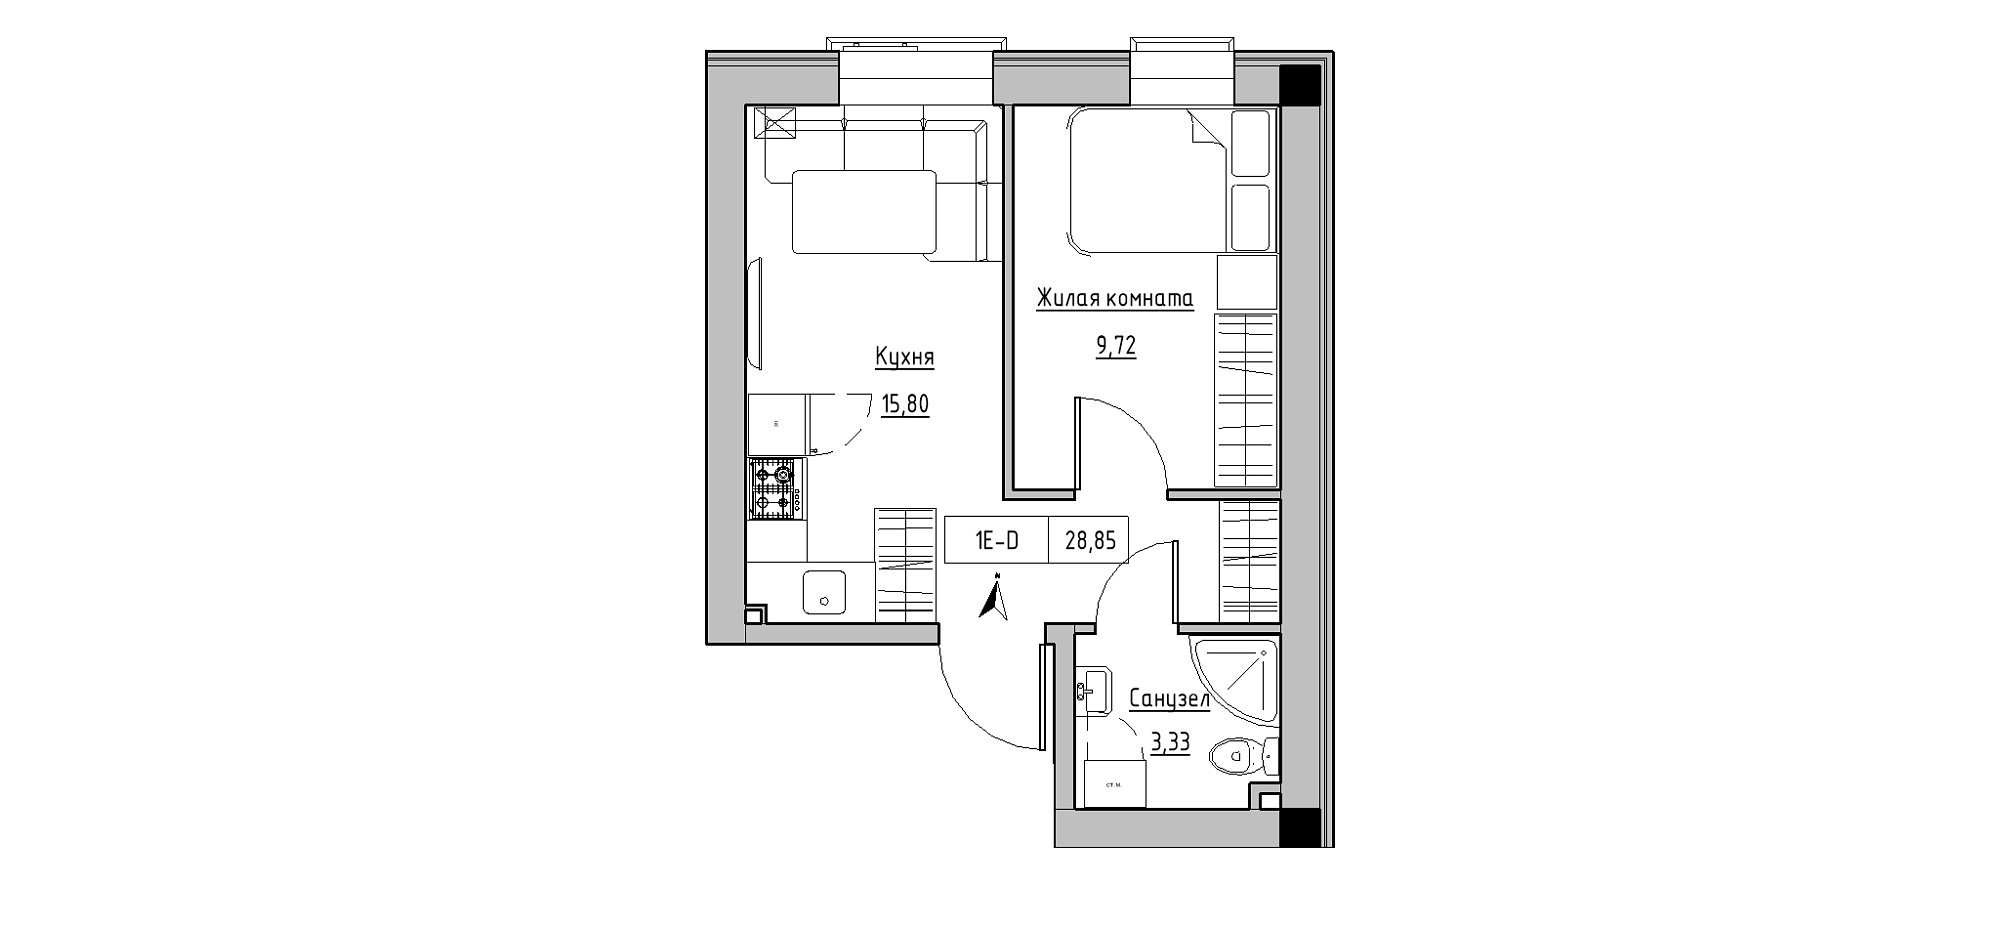 Планировка 1-к квартира площей 28.85м2, KS-020-02/0002.